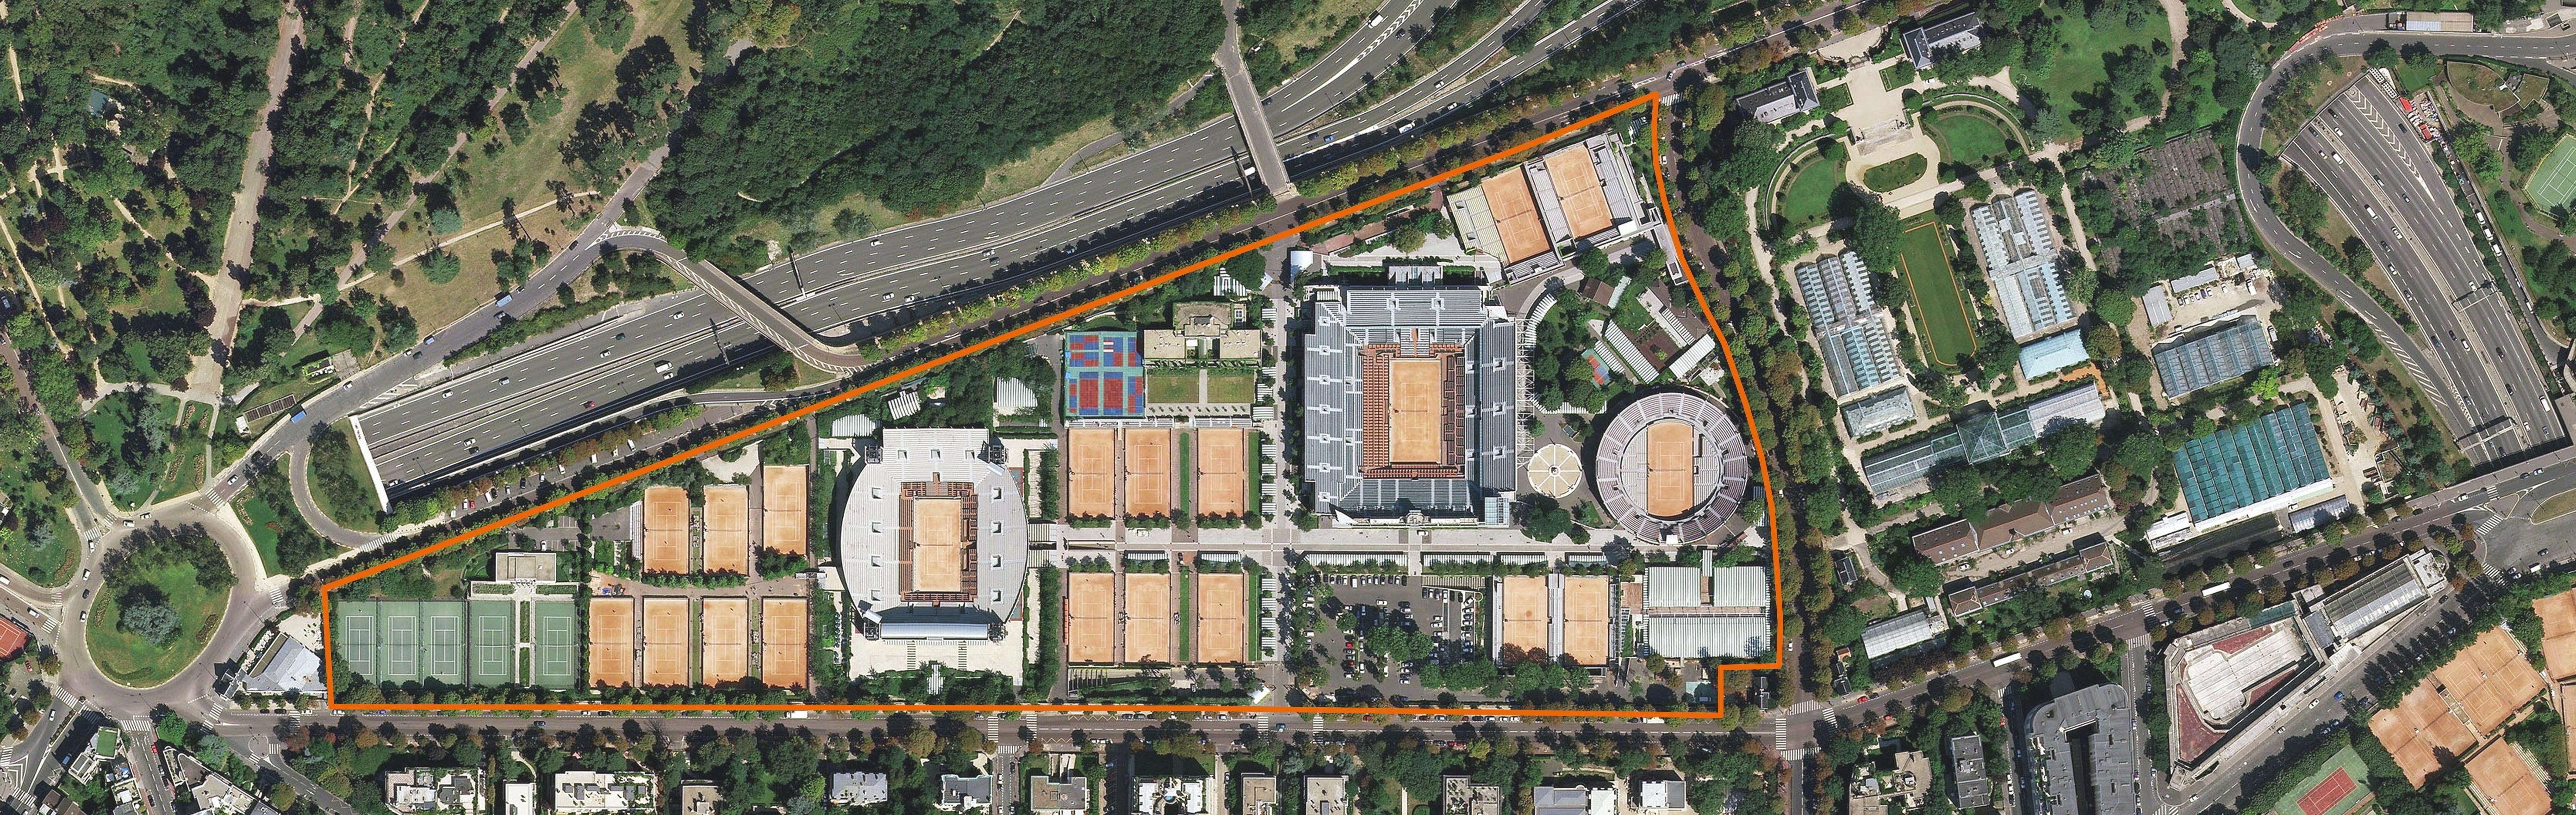 Stade Roland-Garros en 2011 avant le début des travaux.jpg